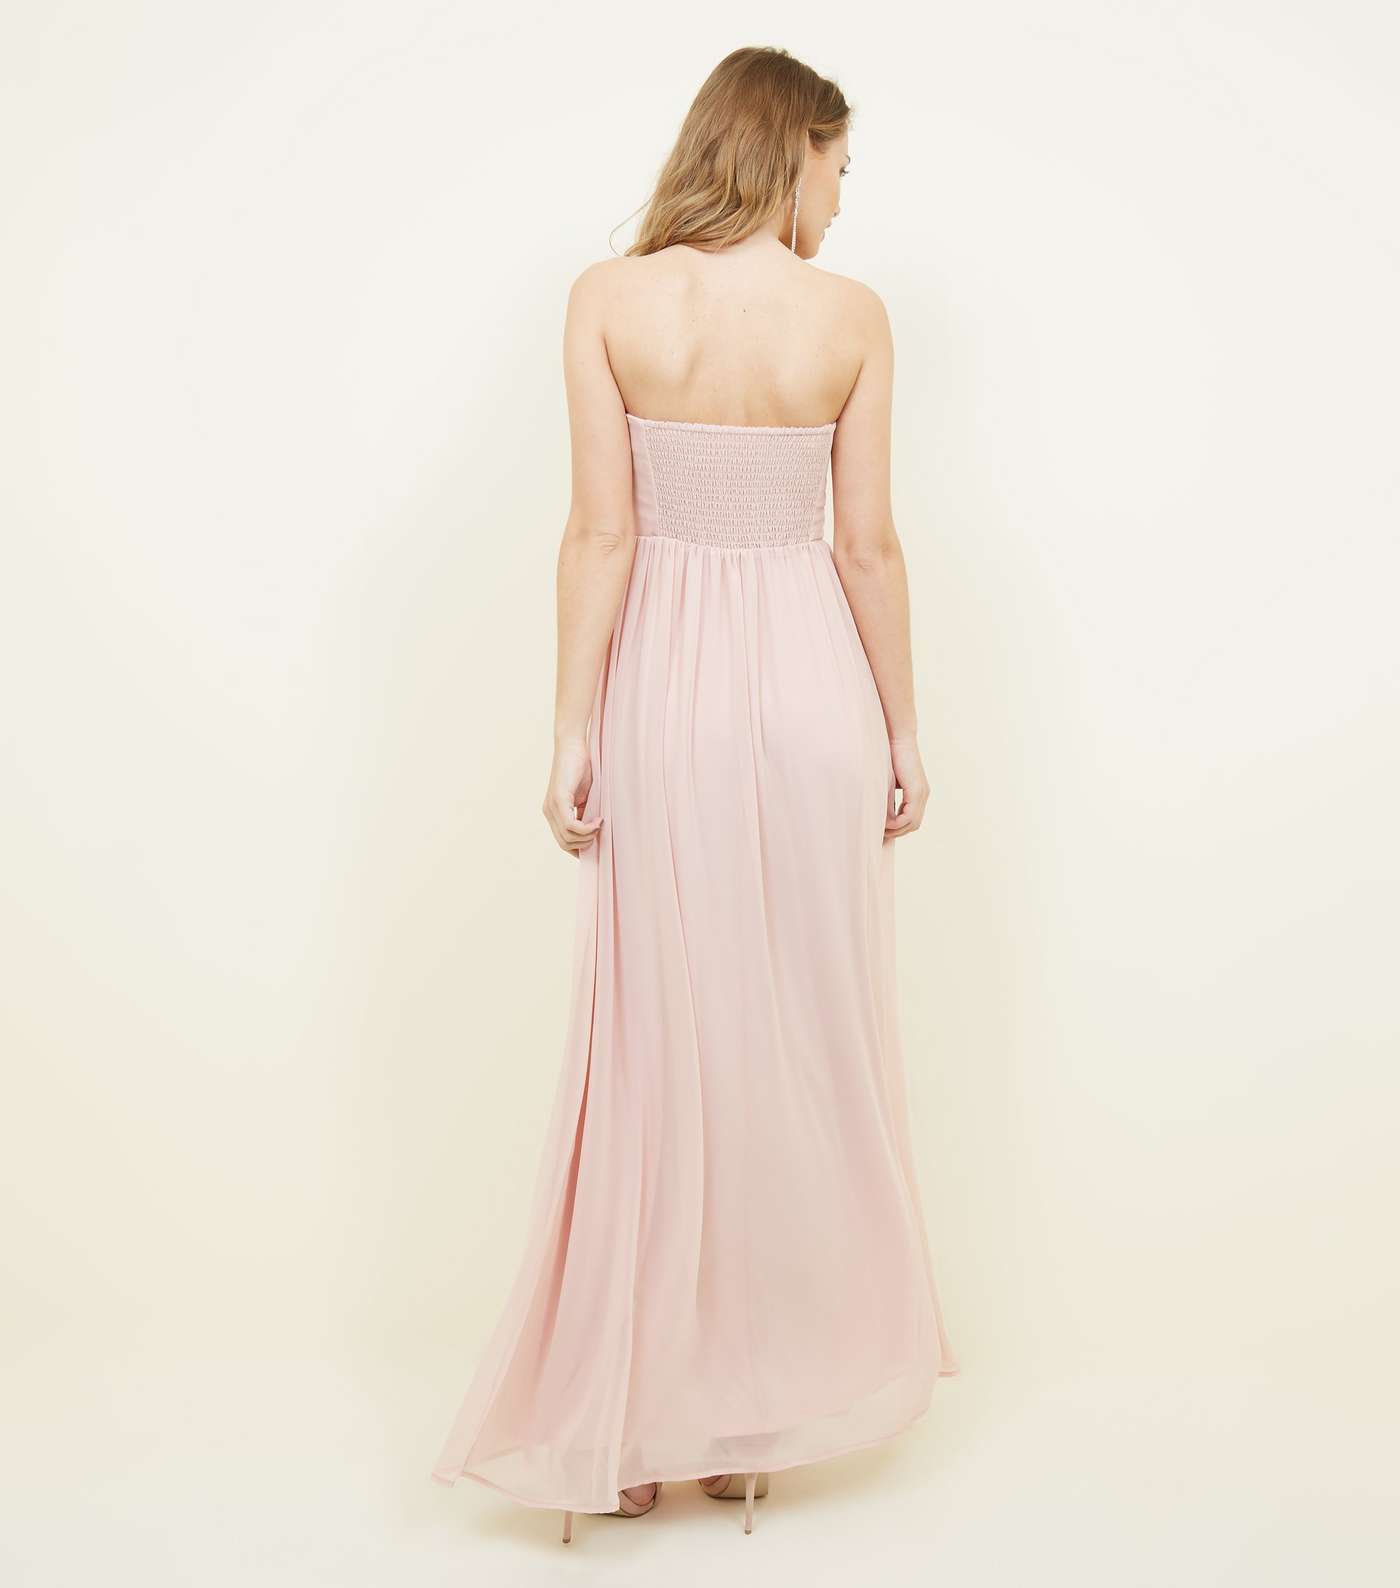 Pale Pink Chiffon Strapless Maxi Dress Image 2